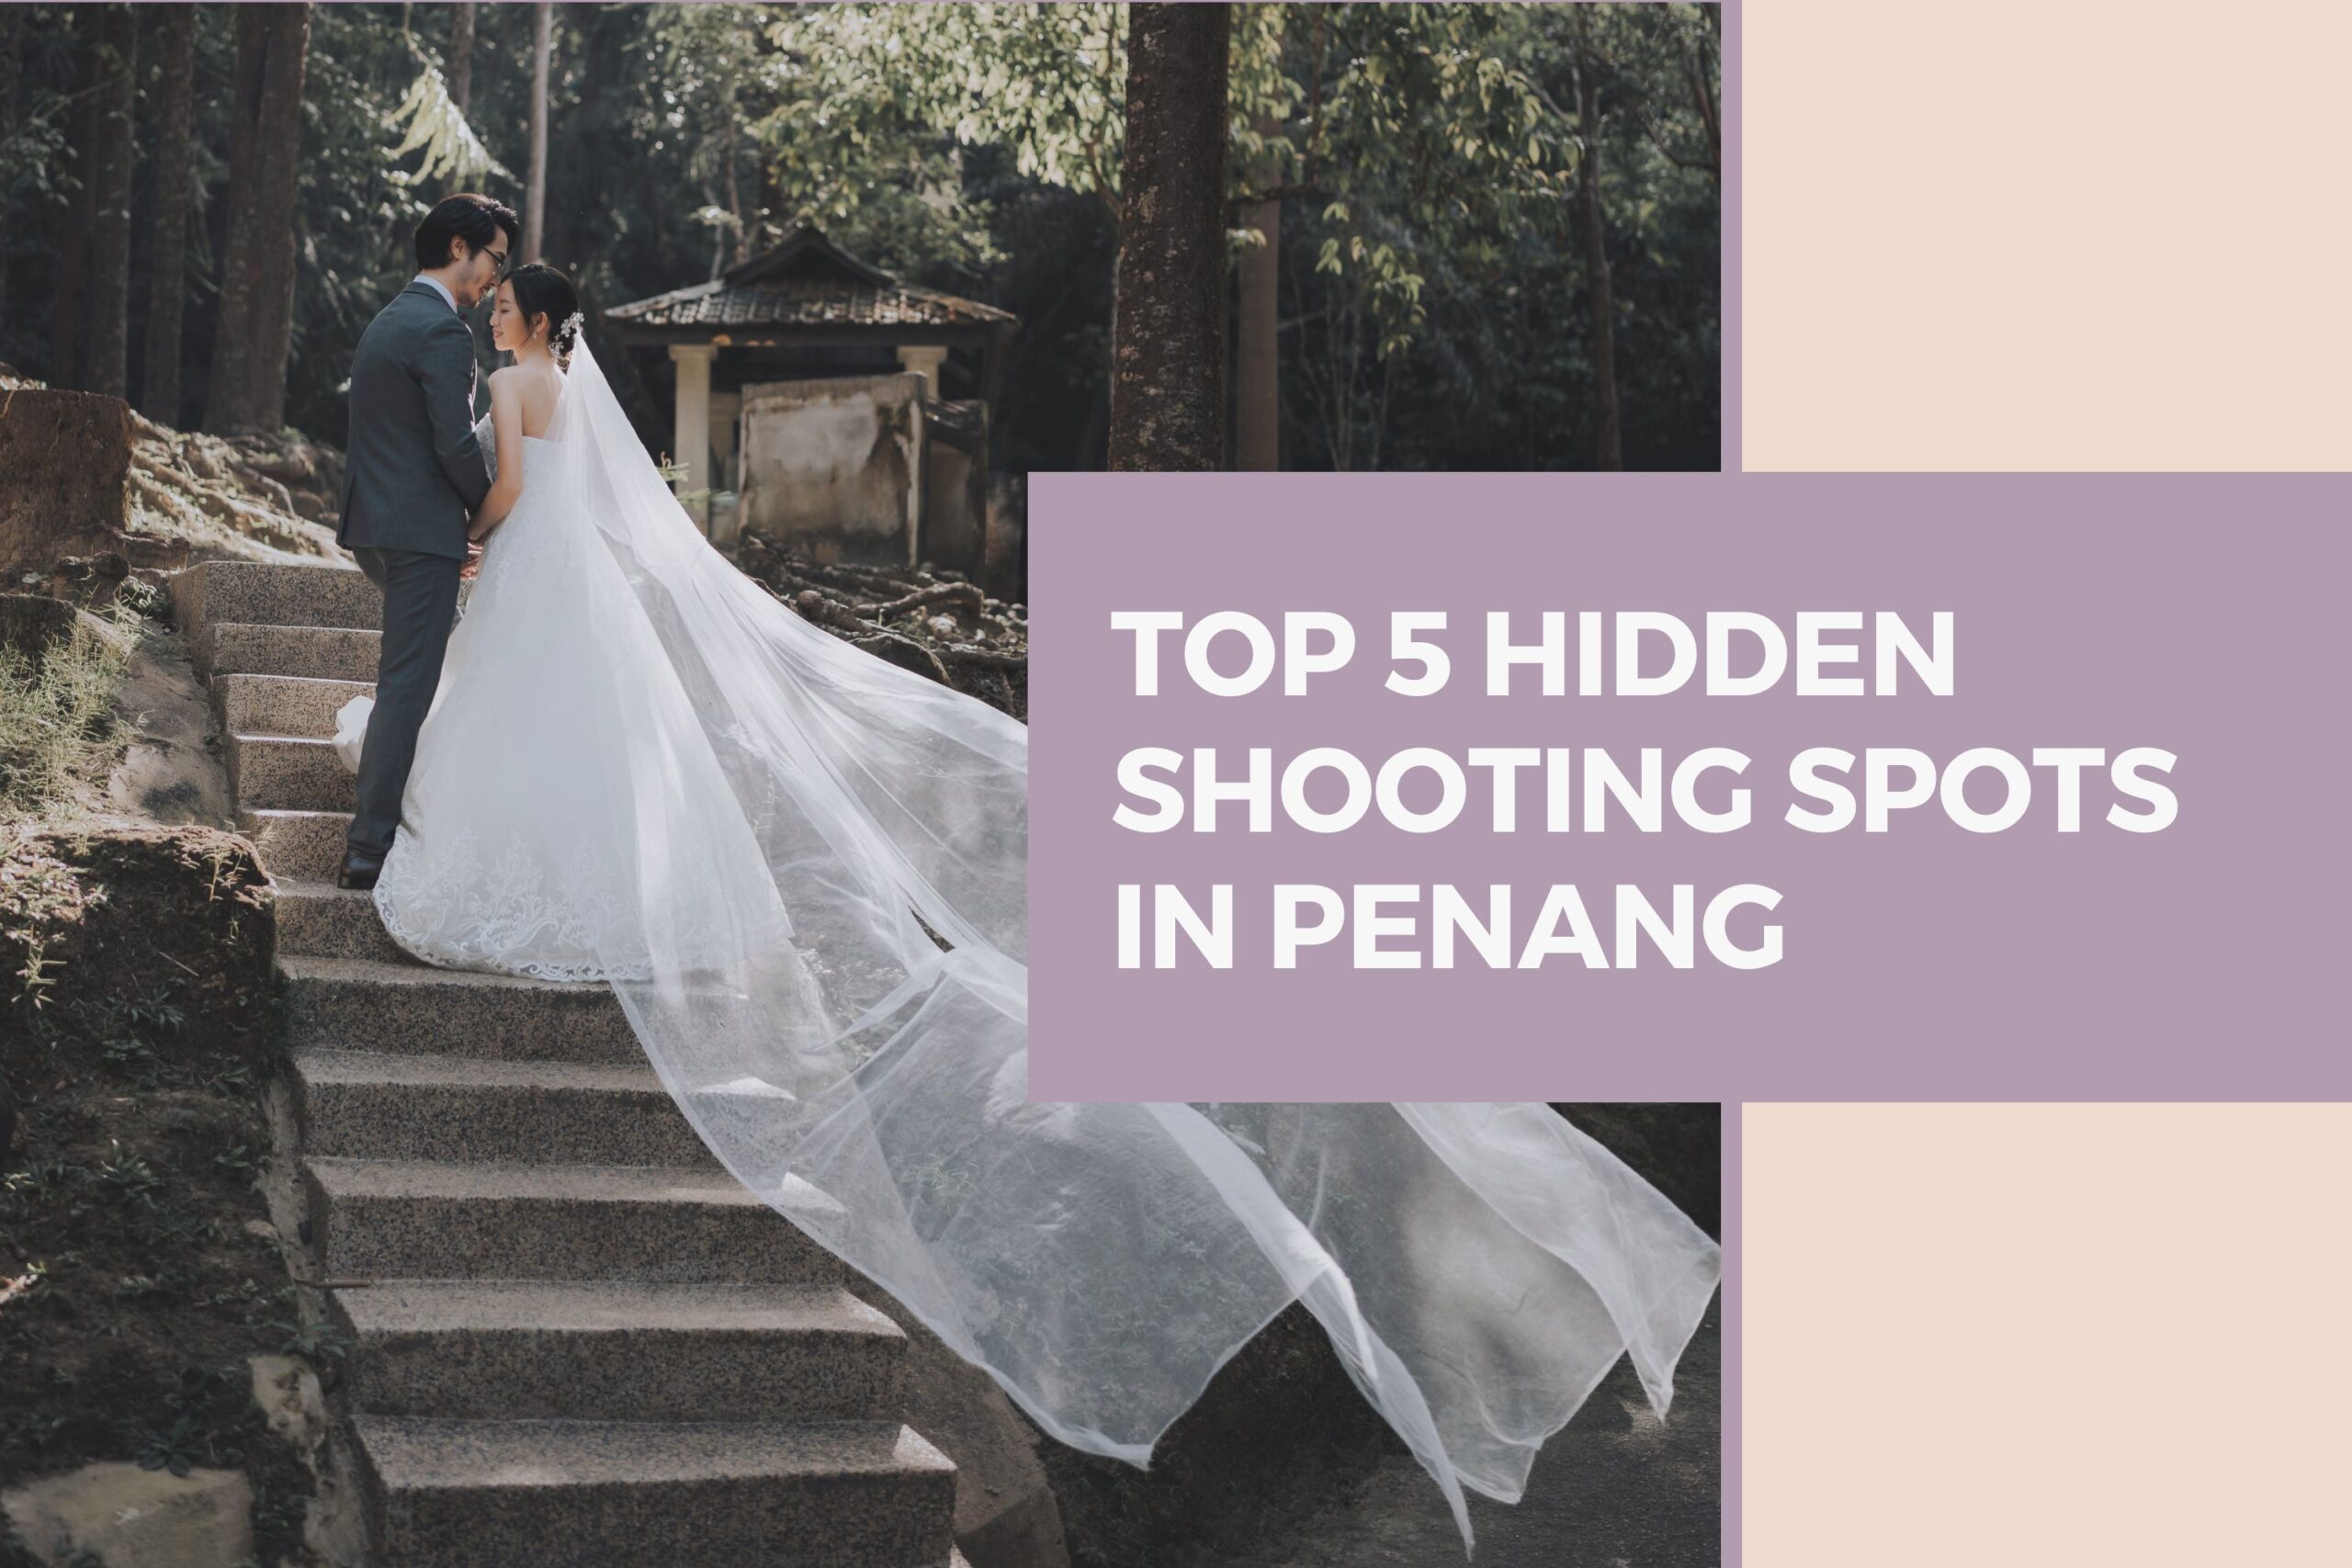 Top 5 Hidden Shooting Spots in Penang